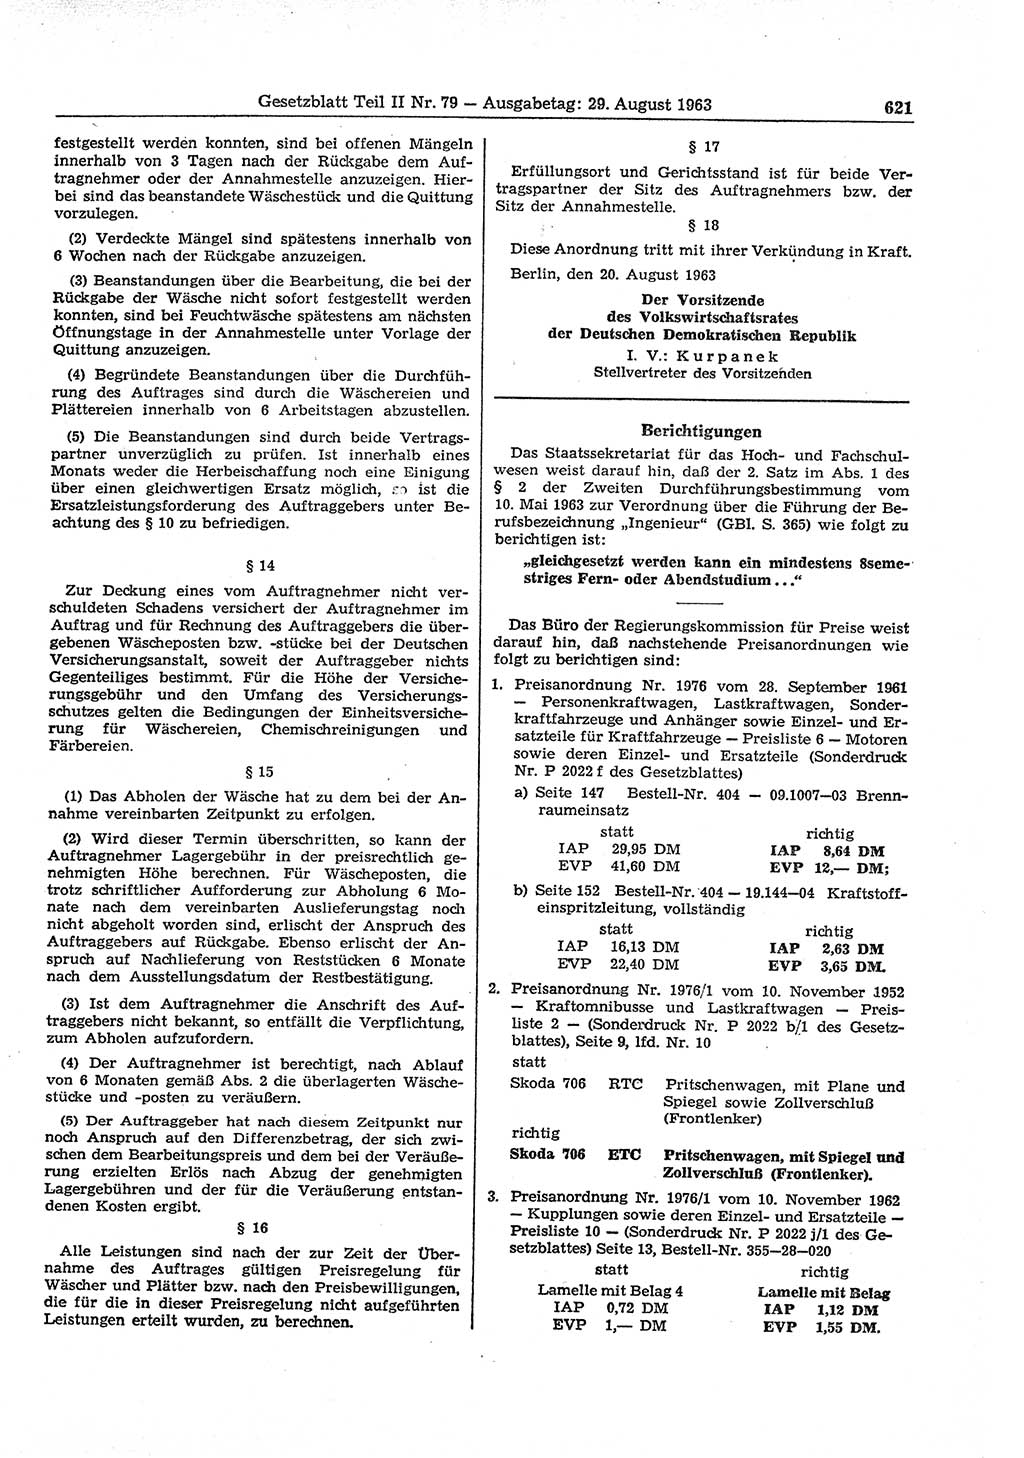 Gesetzblatt (GBl.) der Deutschen Demokratischen Republik (DDR) Teil ⅠⅠ 1963, Seite 621 (GBl. DDR ⅠⅠ 1963, S. 621)